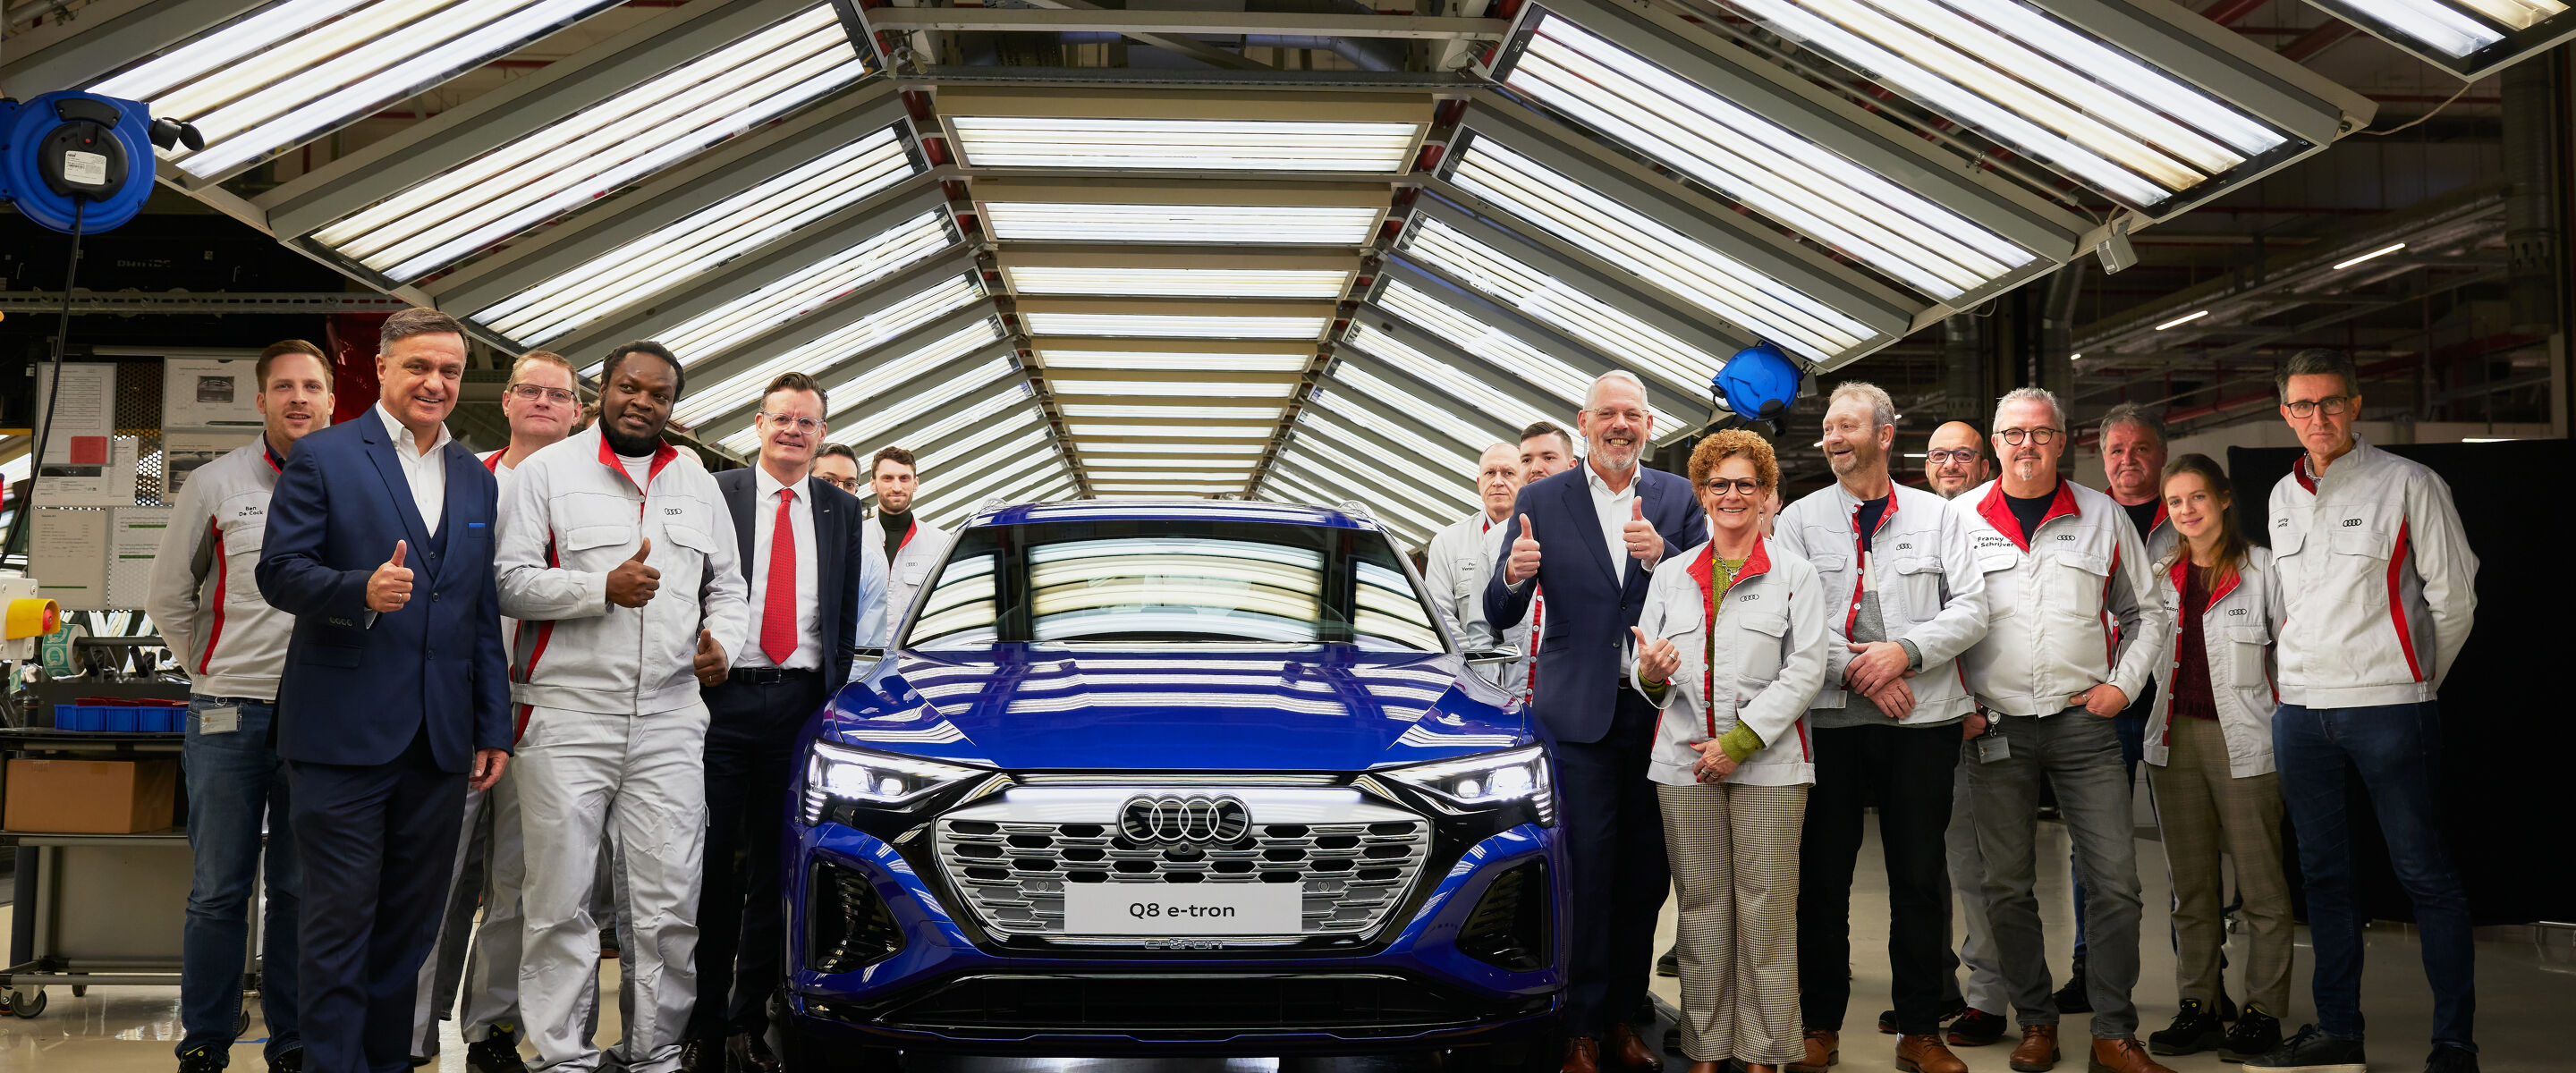 Productie Audi Q8 e-tron is gestart in Brussel